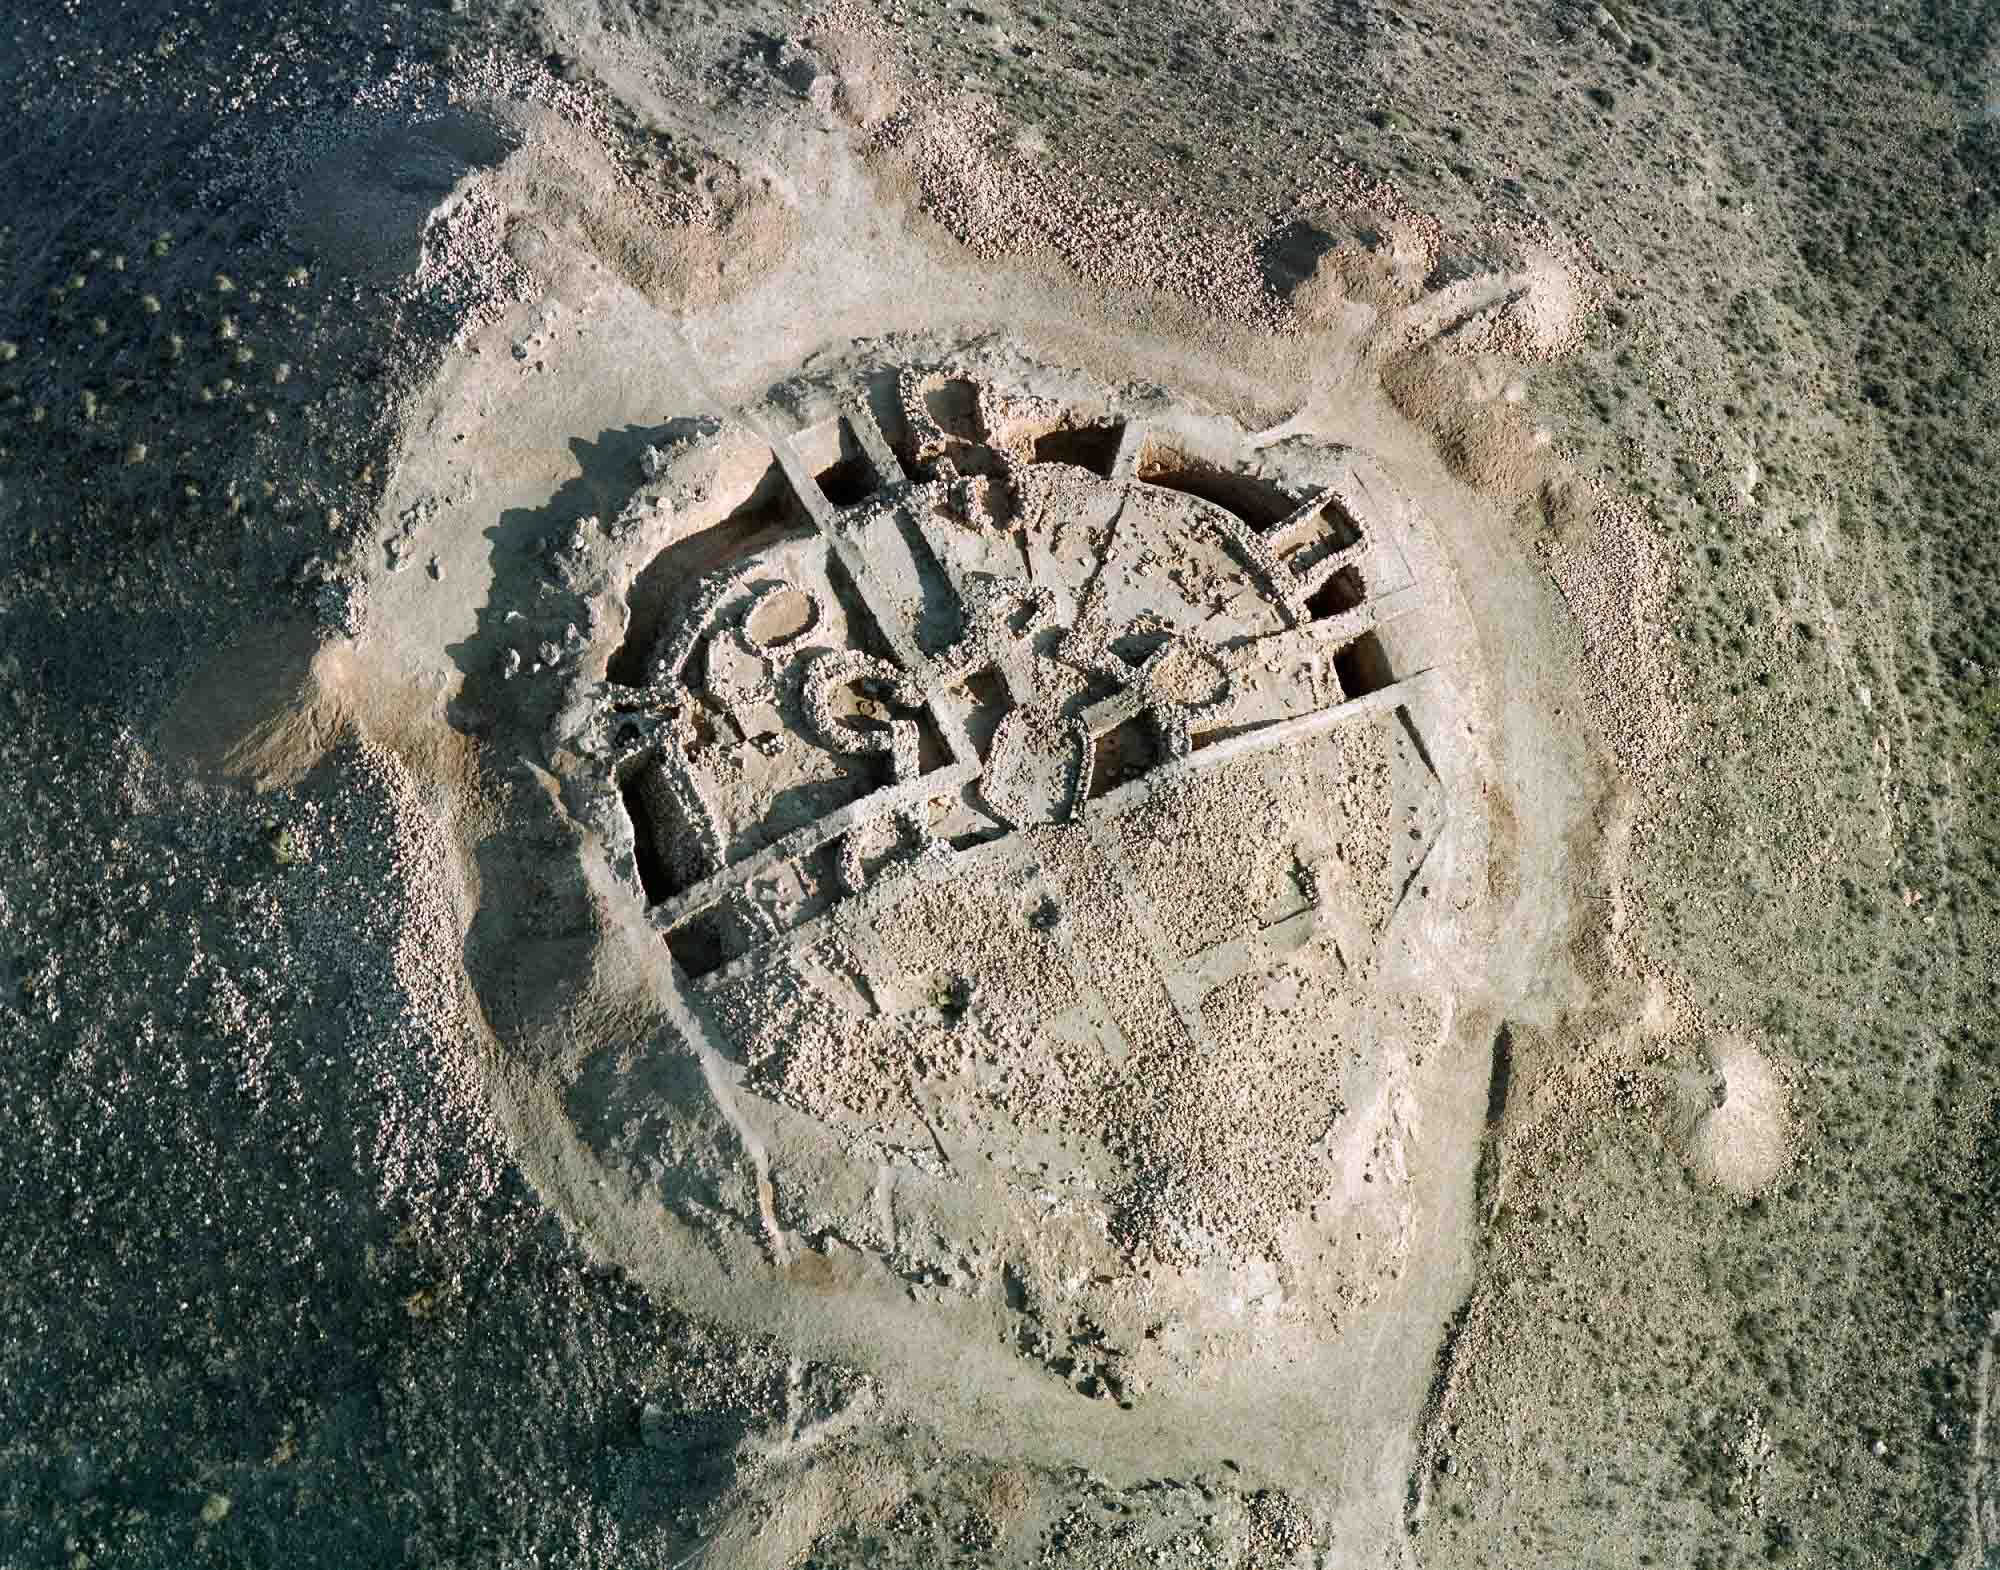 Vista aerea del Fortín 1 de Los Millares - Fuente: Departamento de prehistoria de la Universidad de Granada